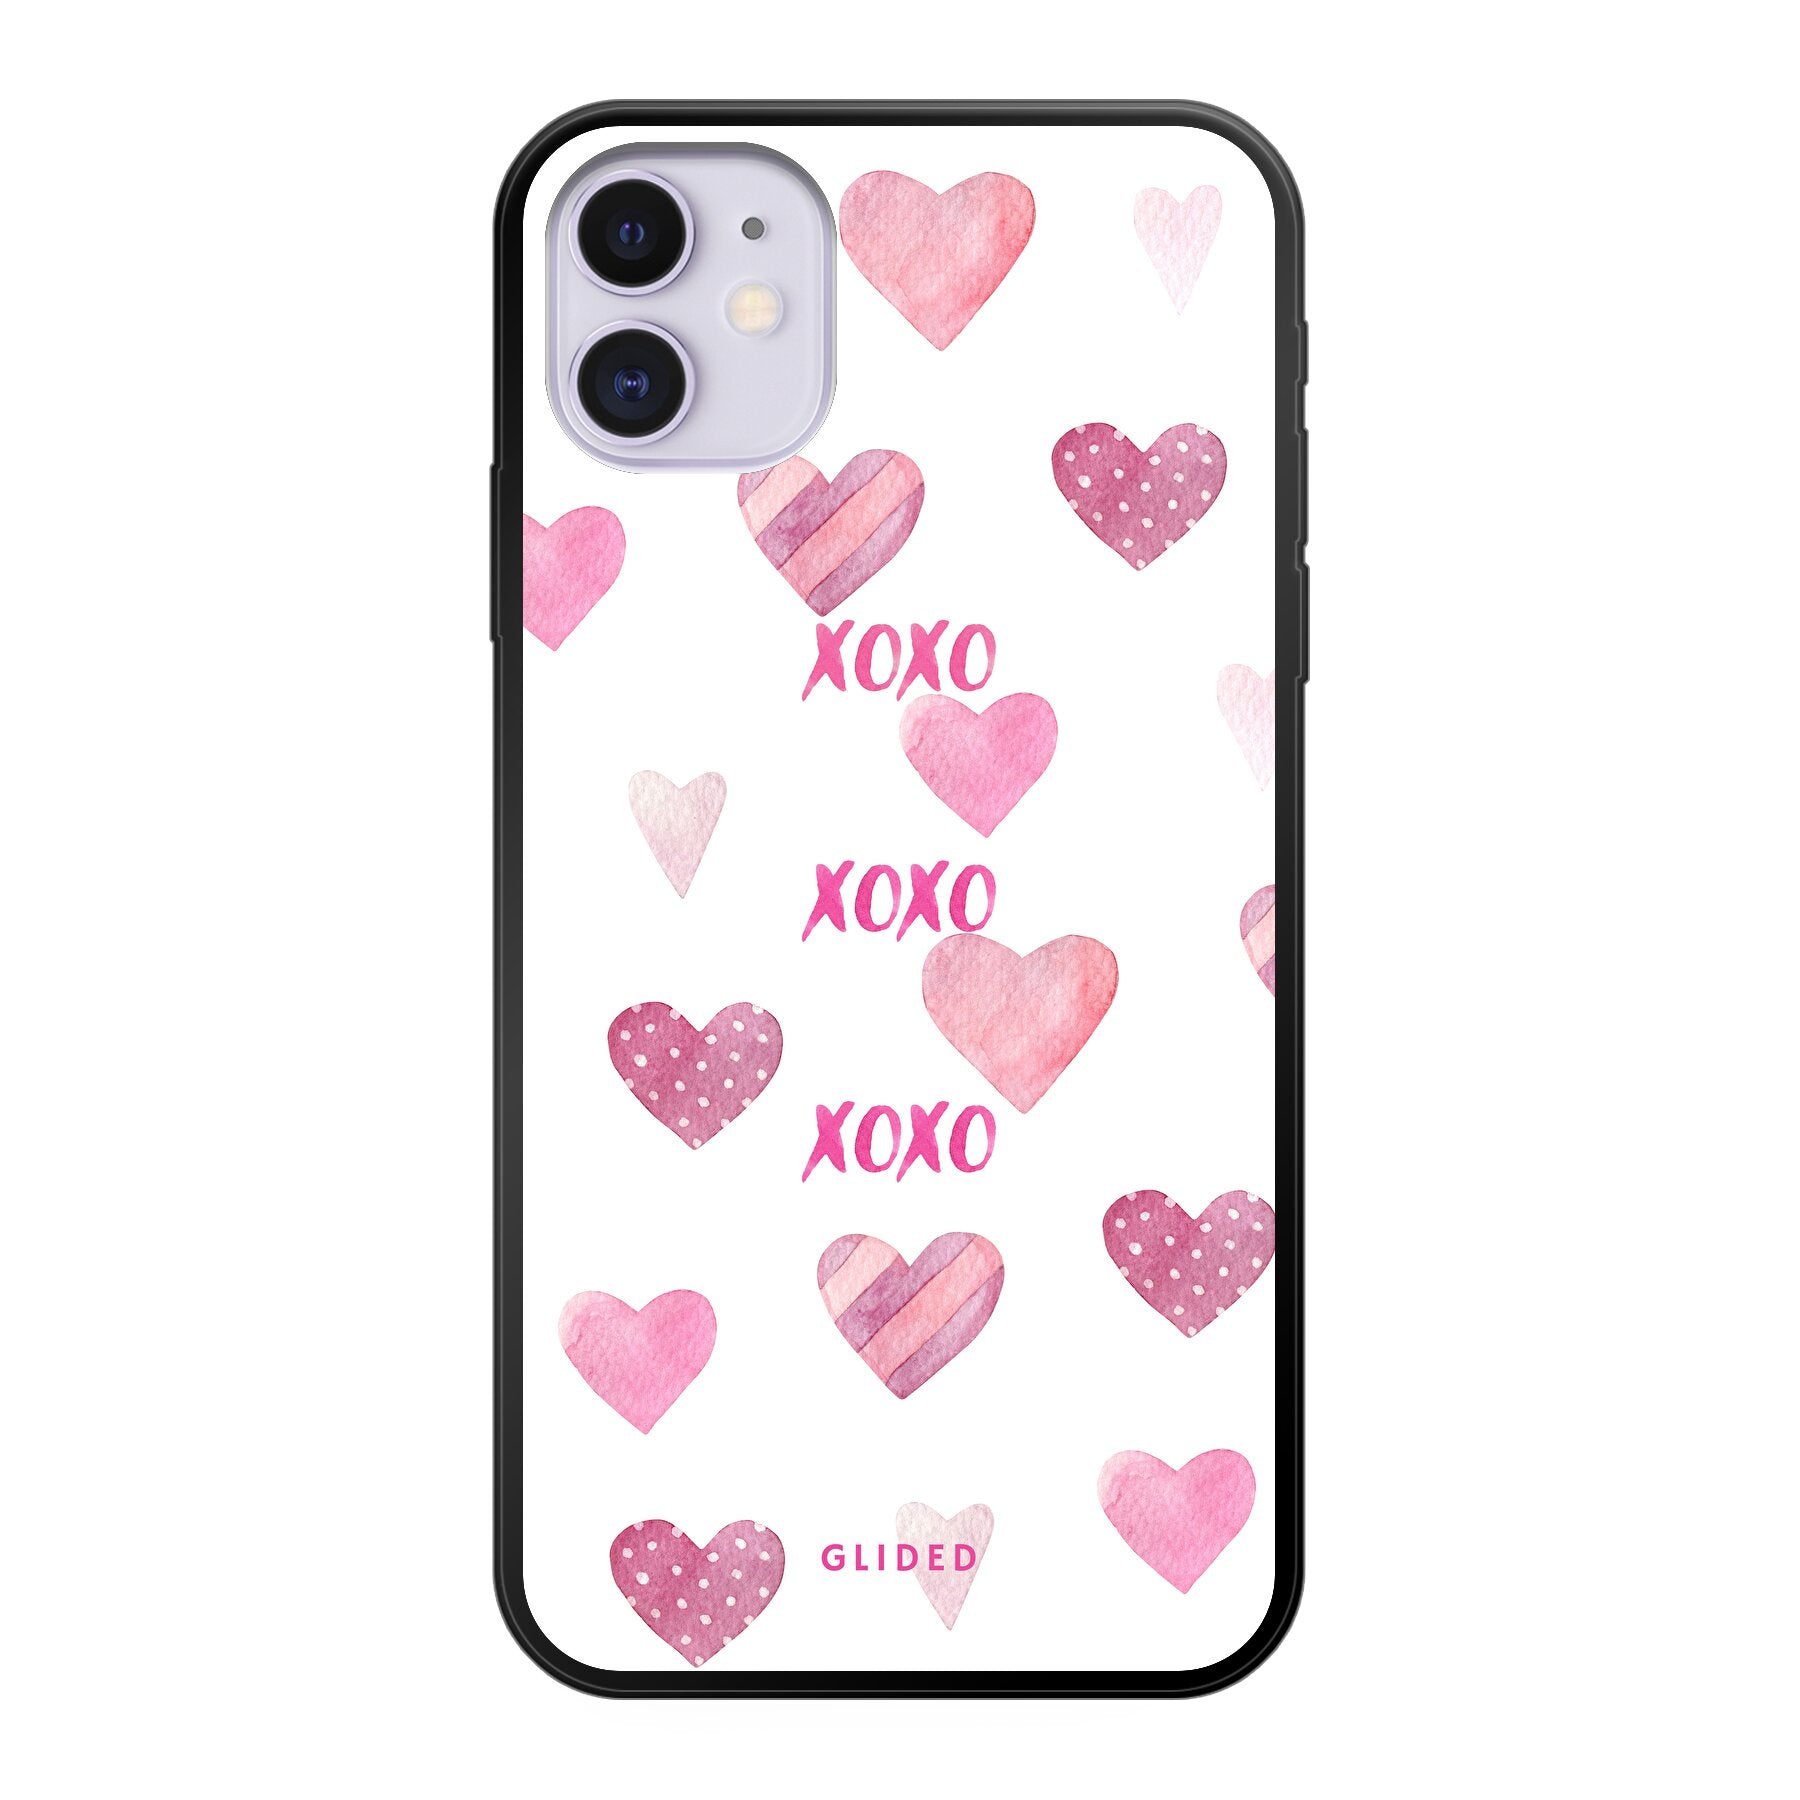 Xoxo - iPhone 11 - Soft case